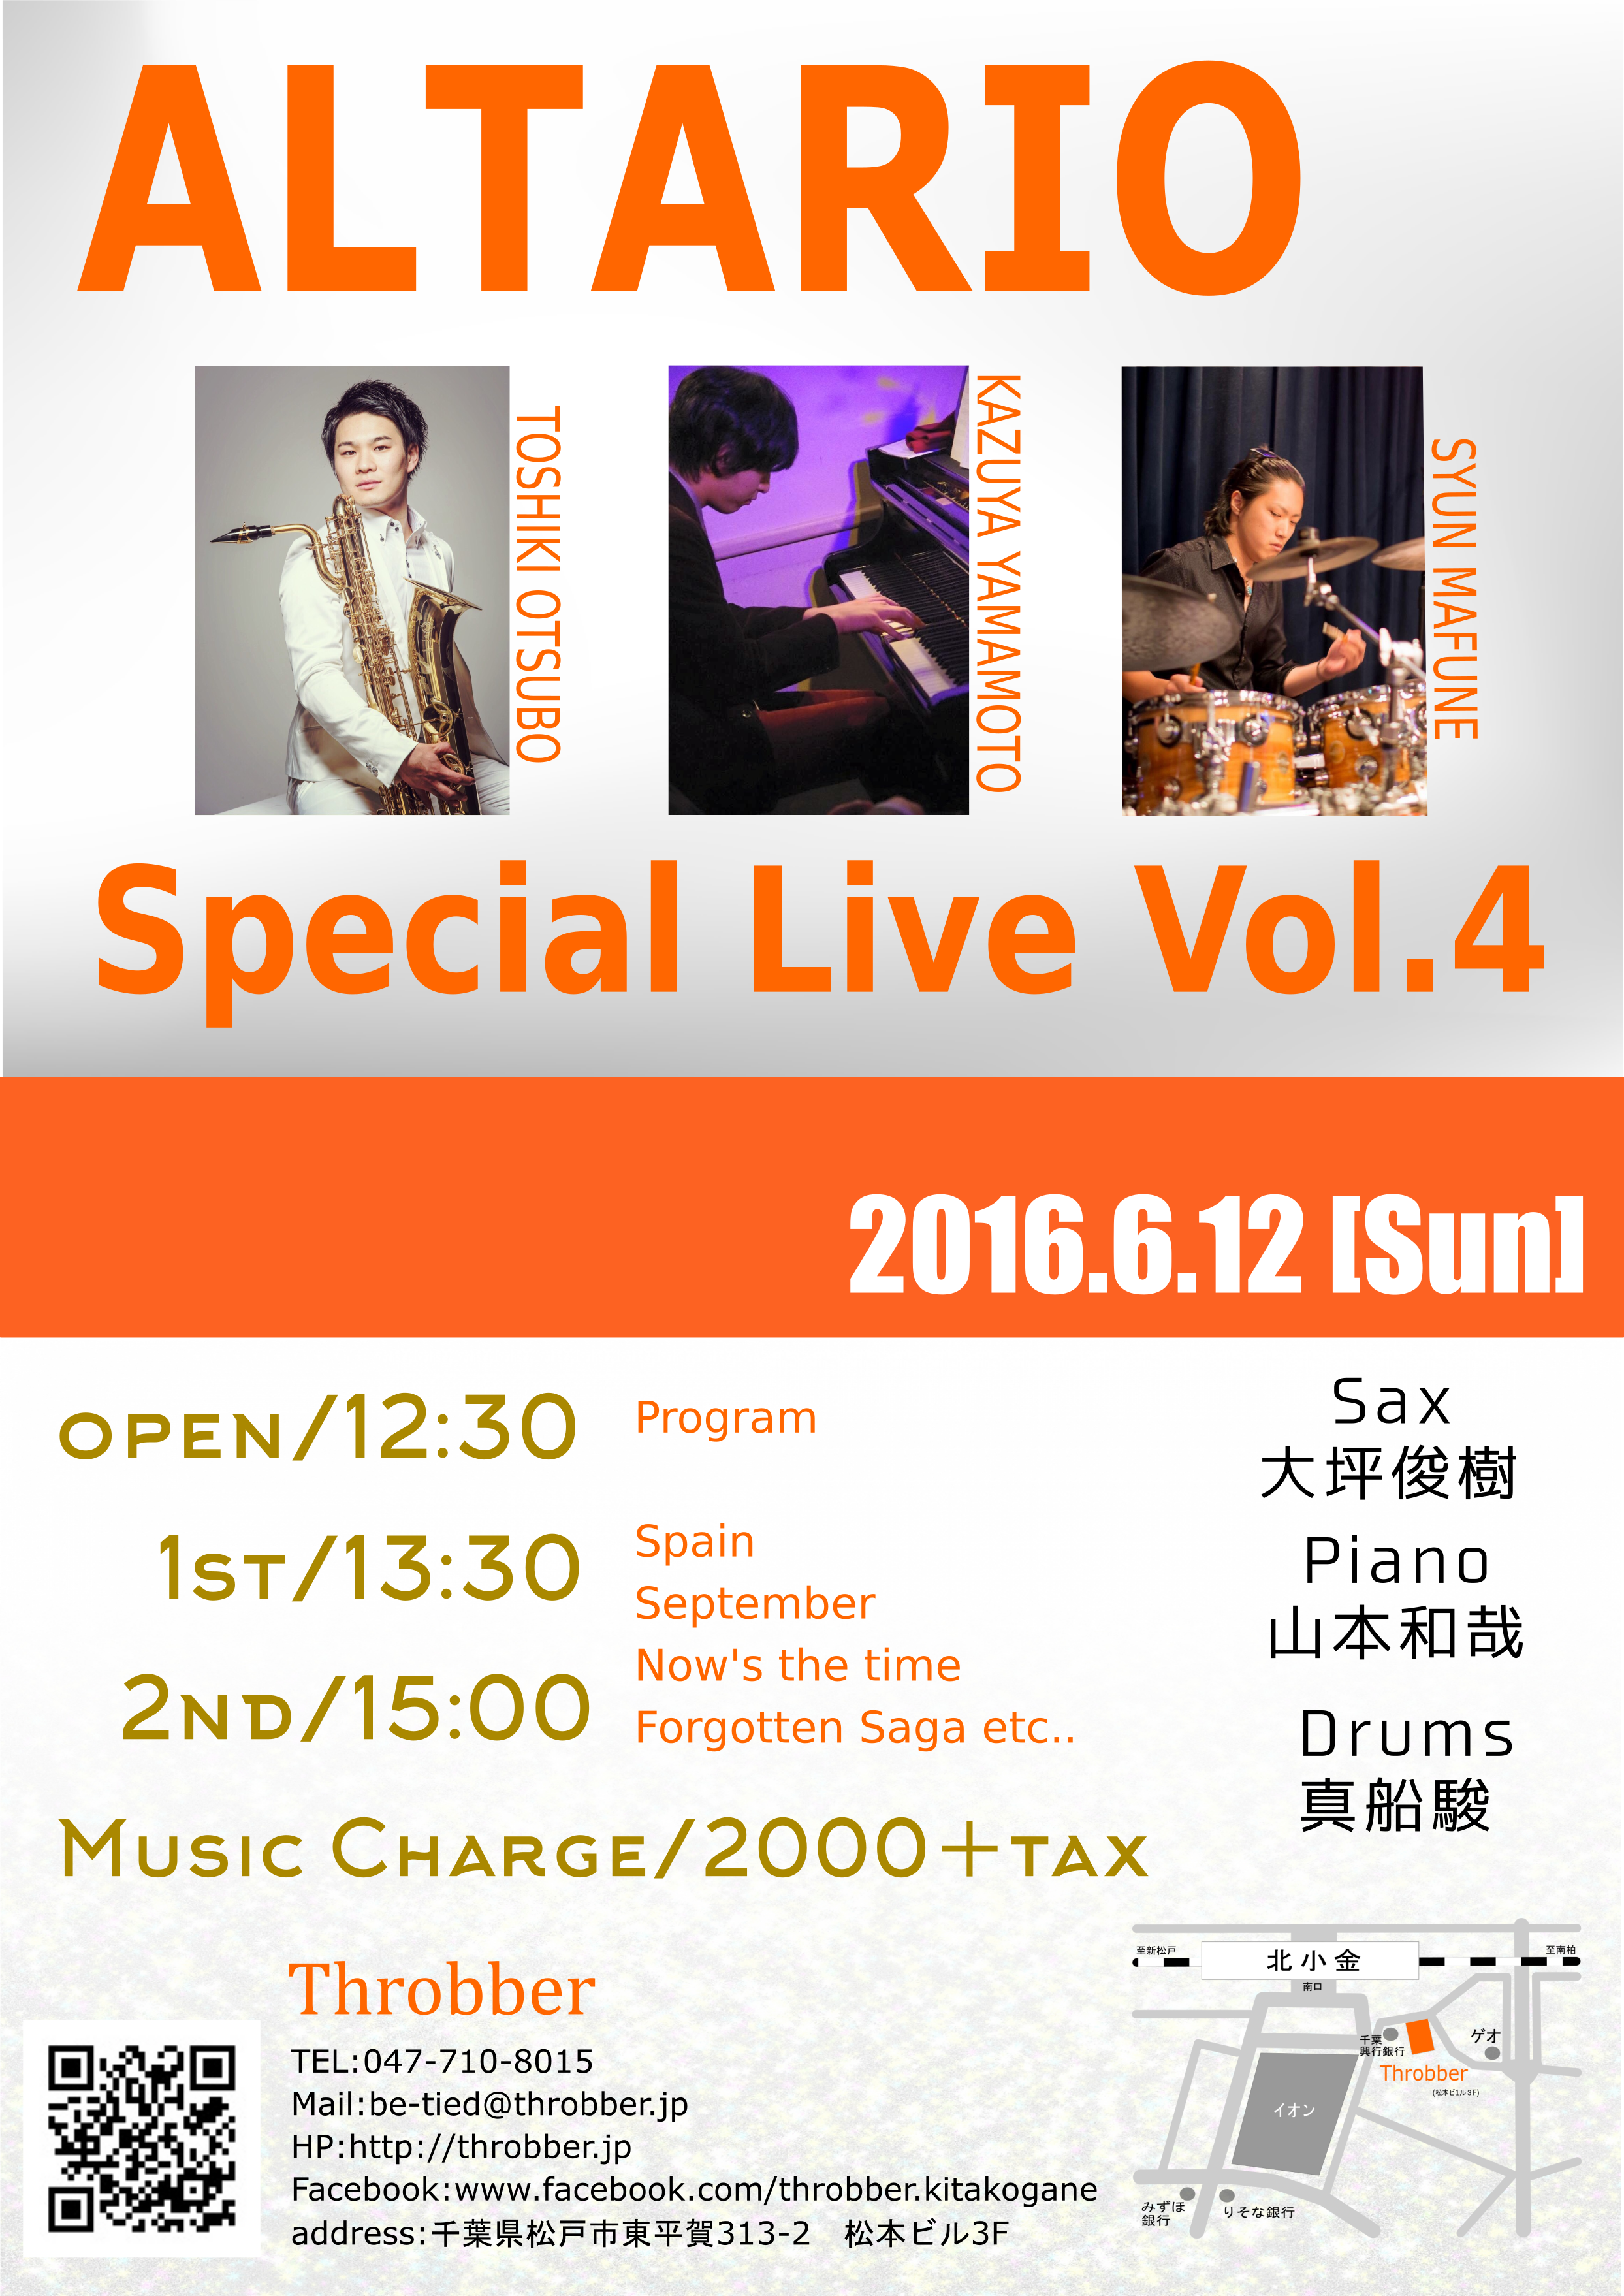 2016.6.12 ALTARIO special live vol.4